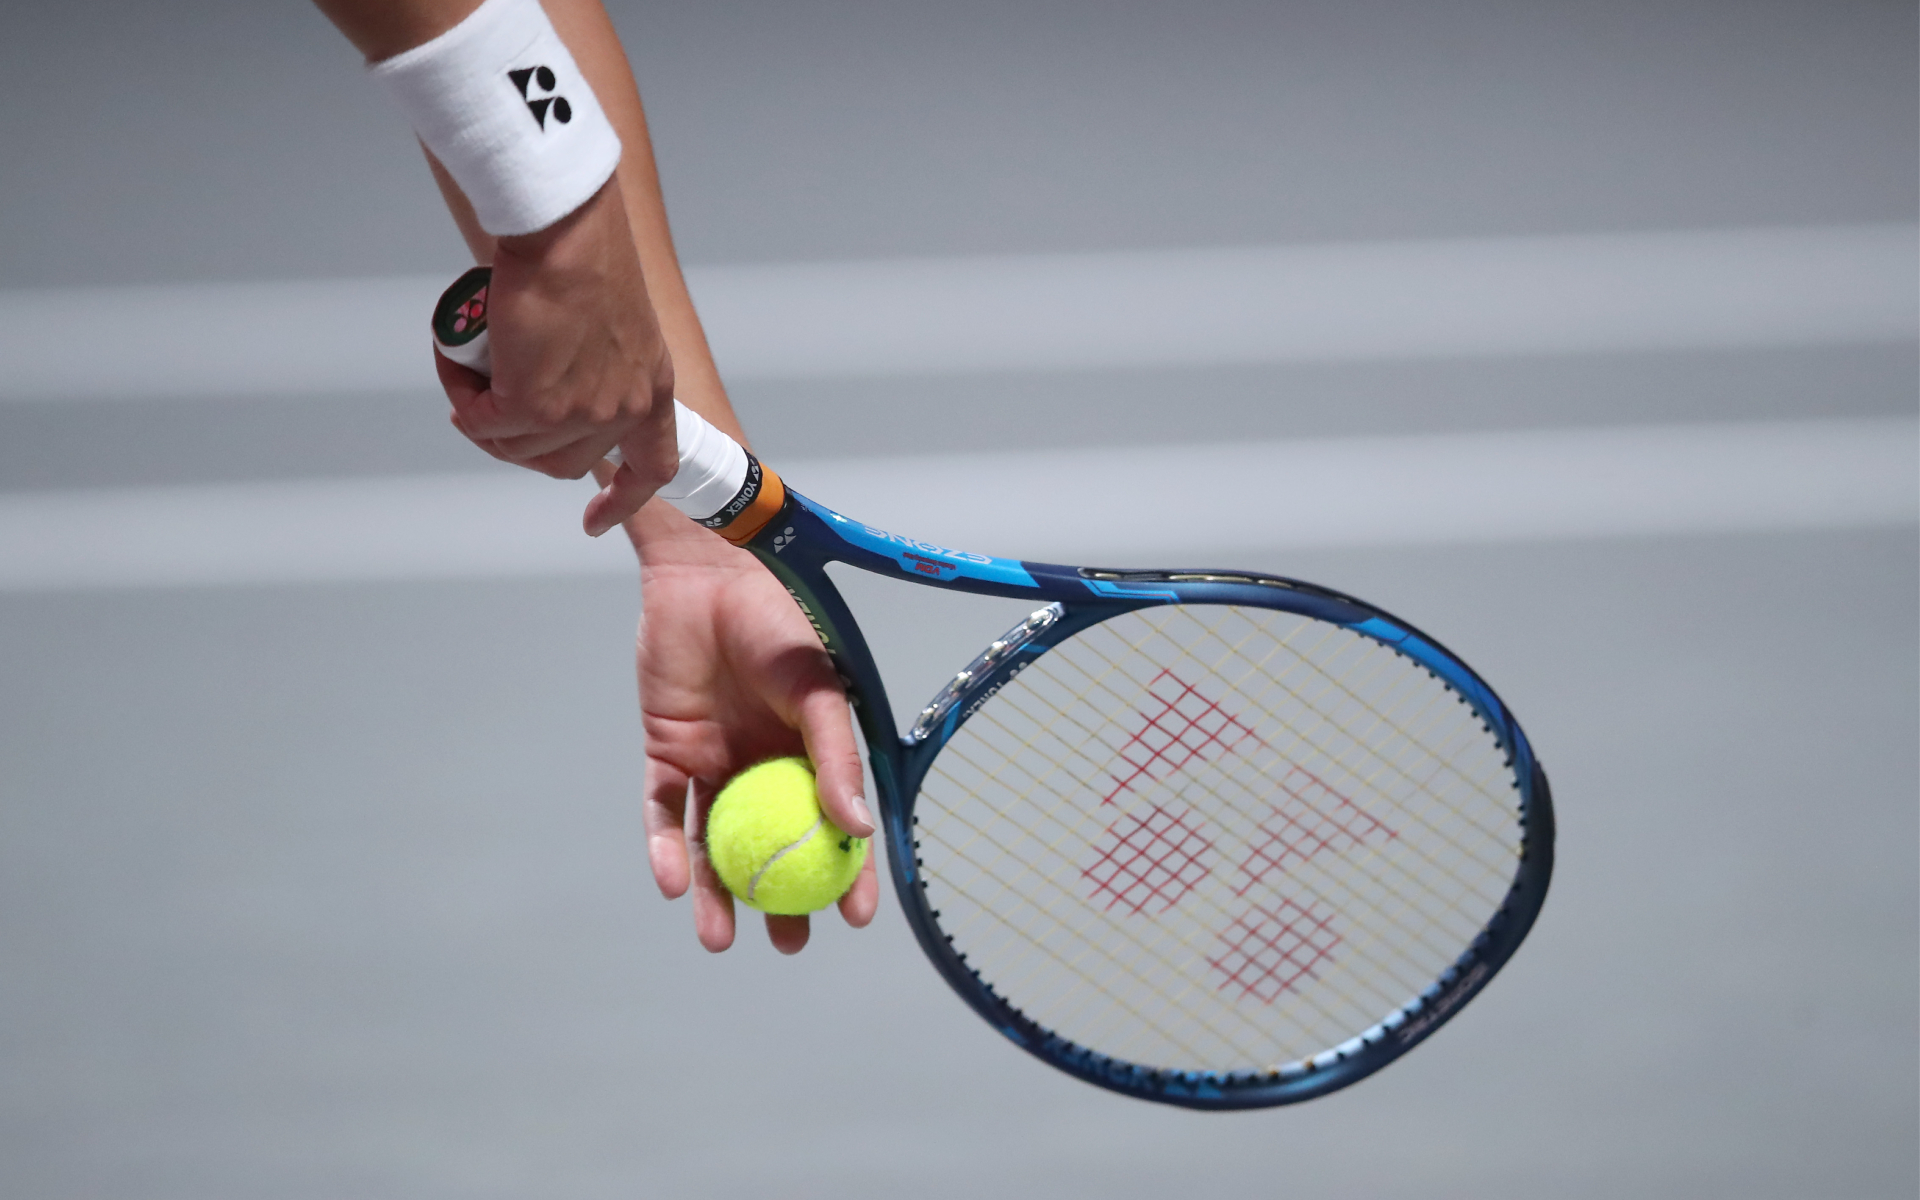 Шестерых испанских теннисистов дисквалифицировали за договорные матчи